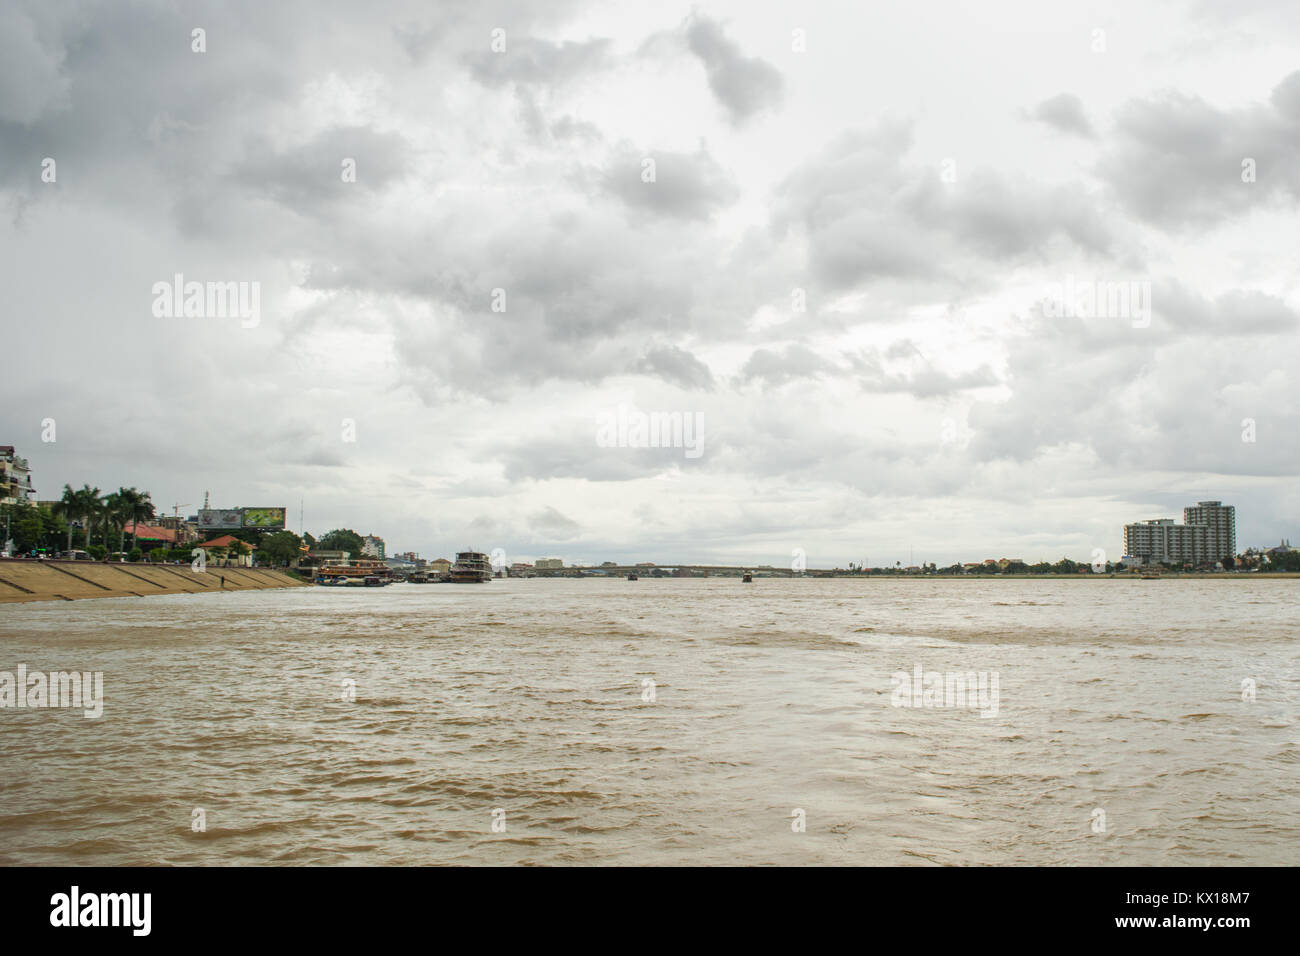 Über den Tonle Sap Fluss mit dem Boot in Phnom Penh, Kambodscha, mit bewölkt regen Himmel während der Monsunzeit, Japan Kambodscha Friendship Bridge in der Entfernung Stockfoto